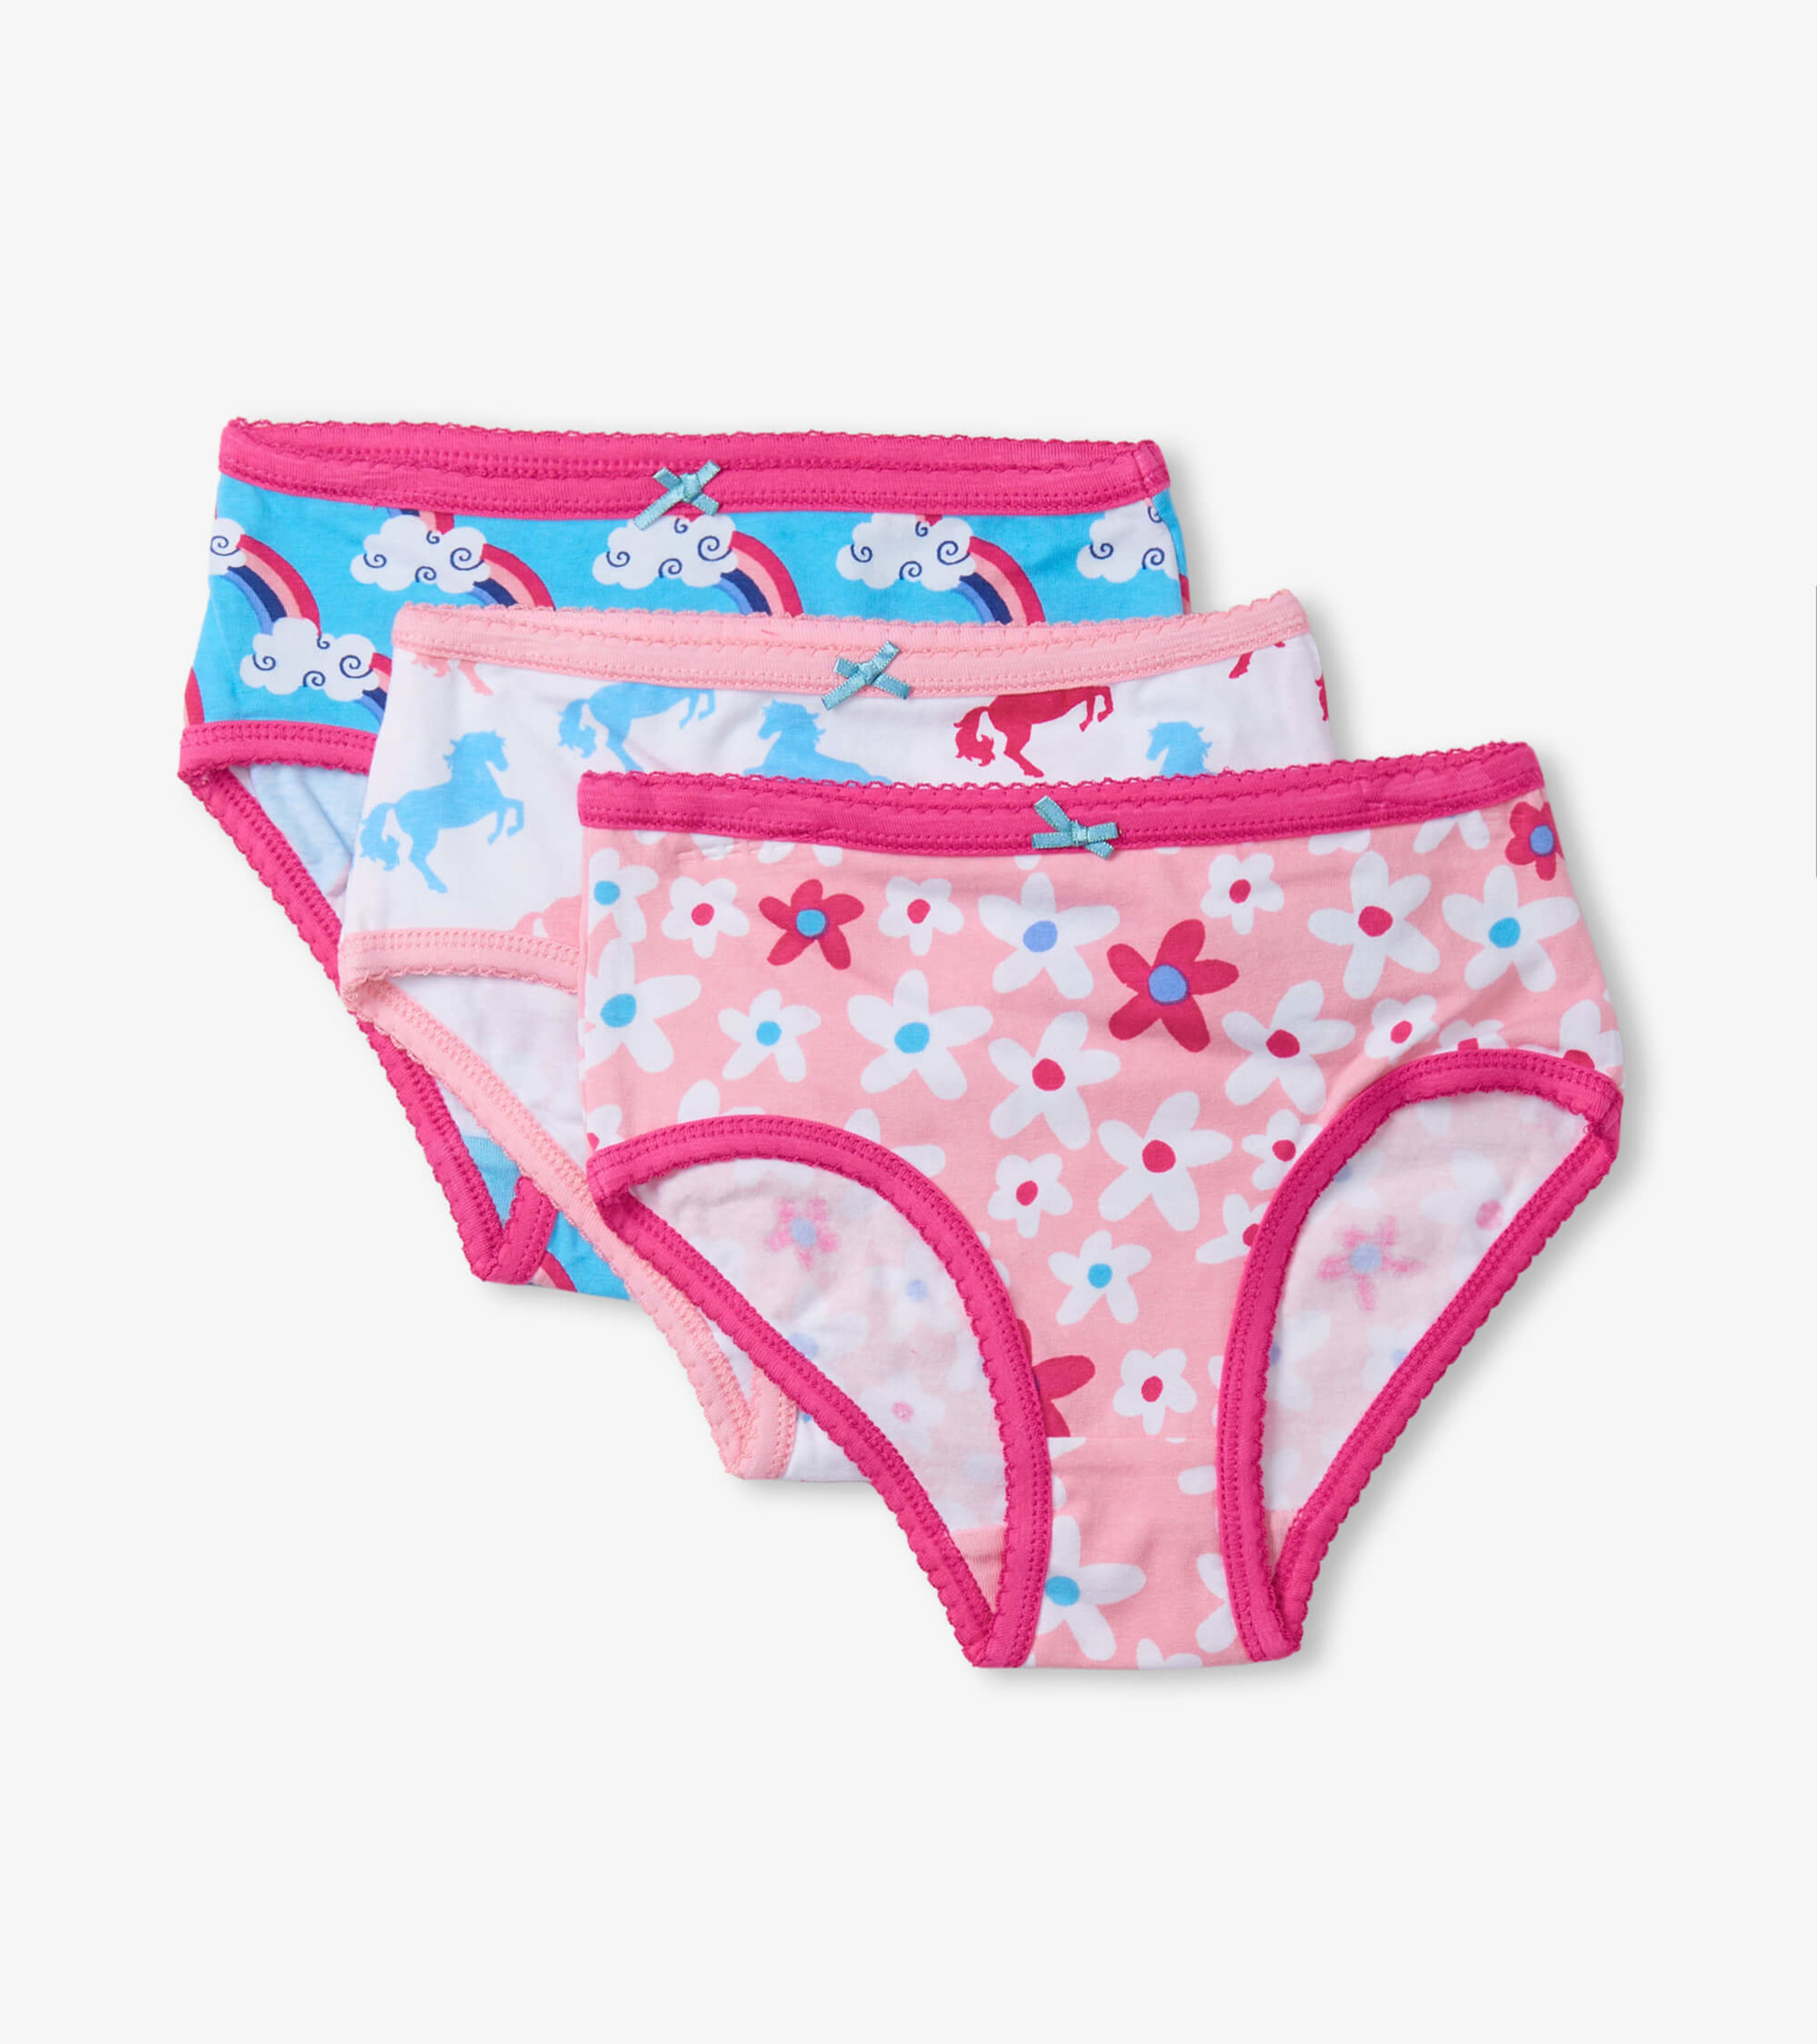 Fun Prints Girls Brief Underwear 3 Pack - Hatley US